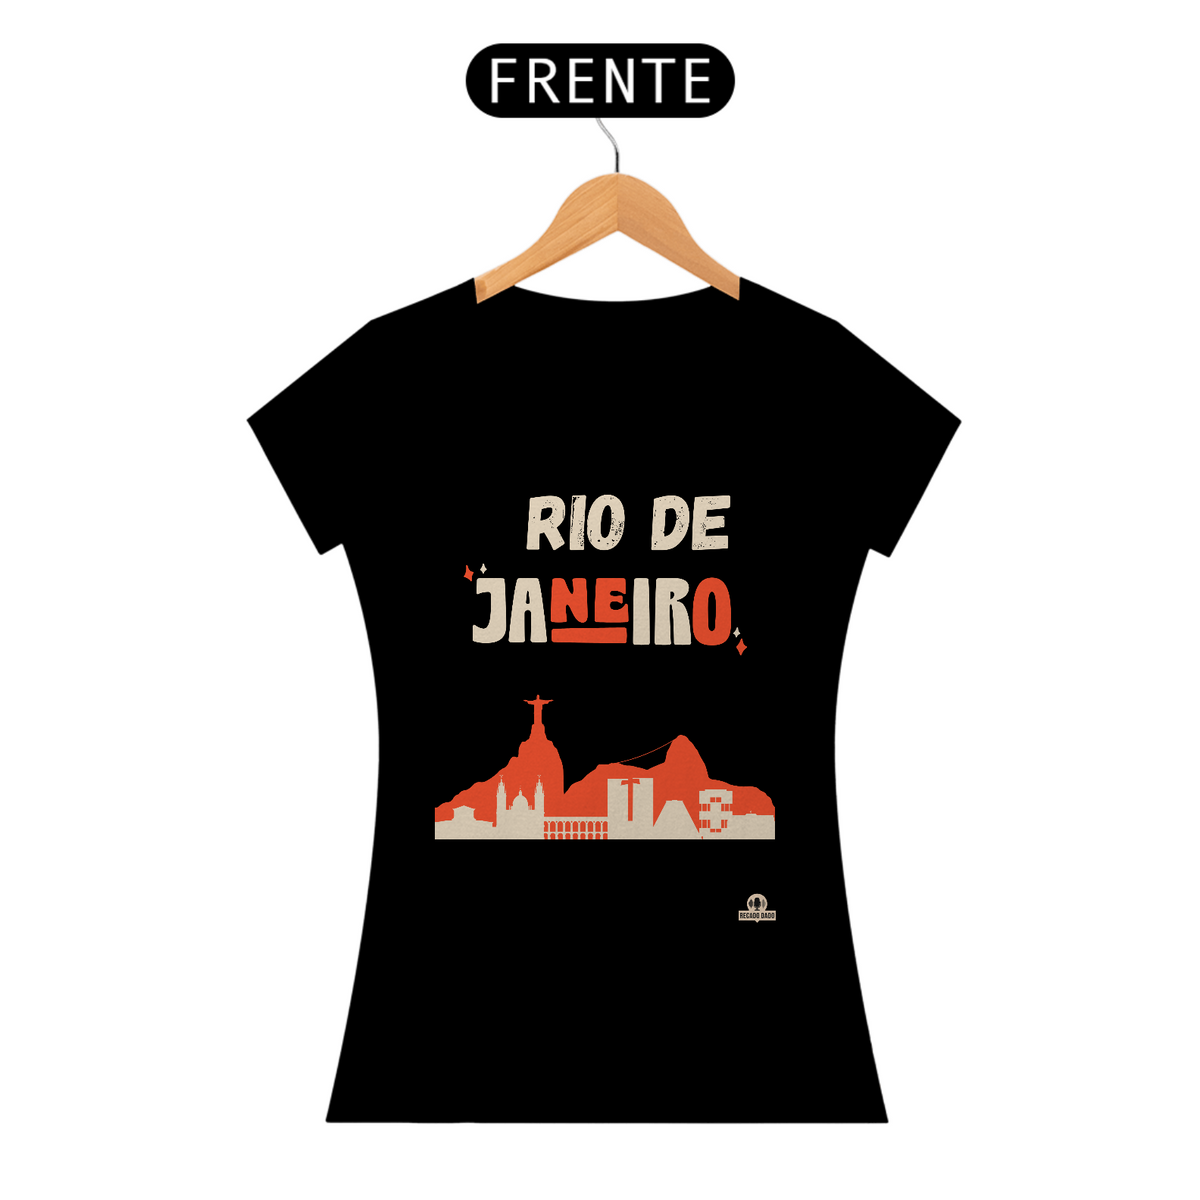 Nome do produto: Camiseta feminina com linda silhueta do Rio de Janeiro, com as paisagens da cidade maravilhosa.